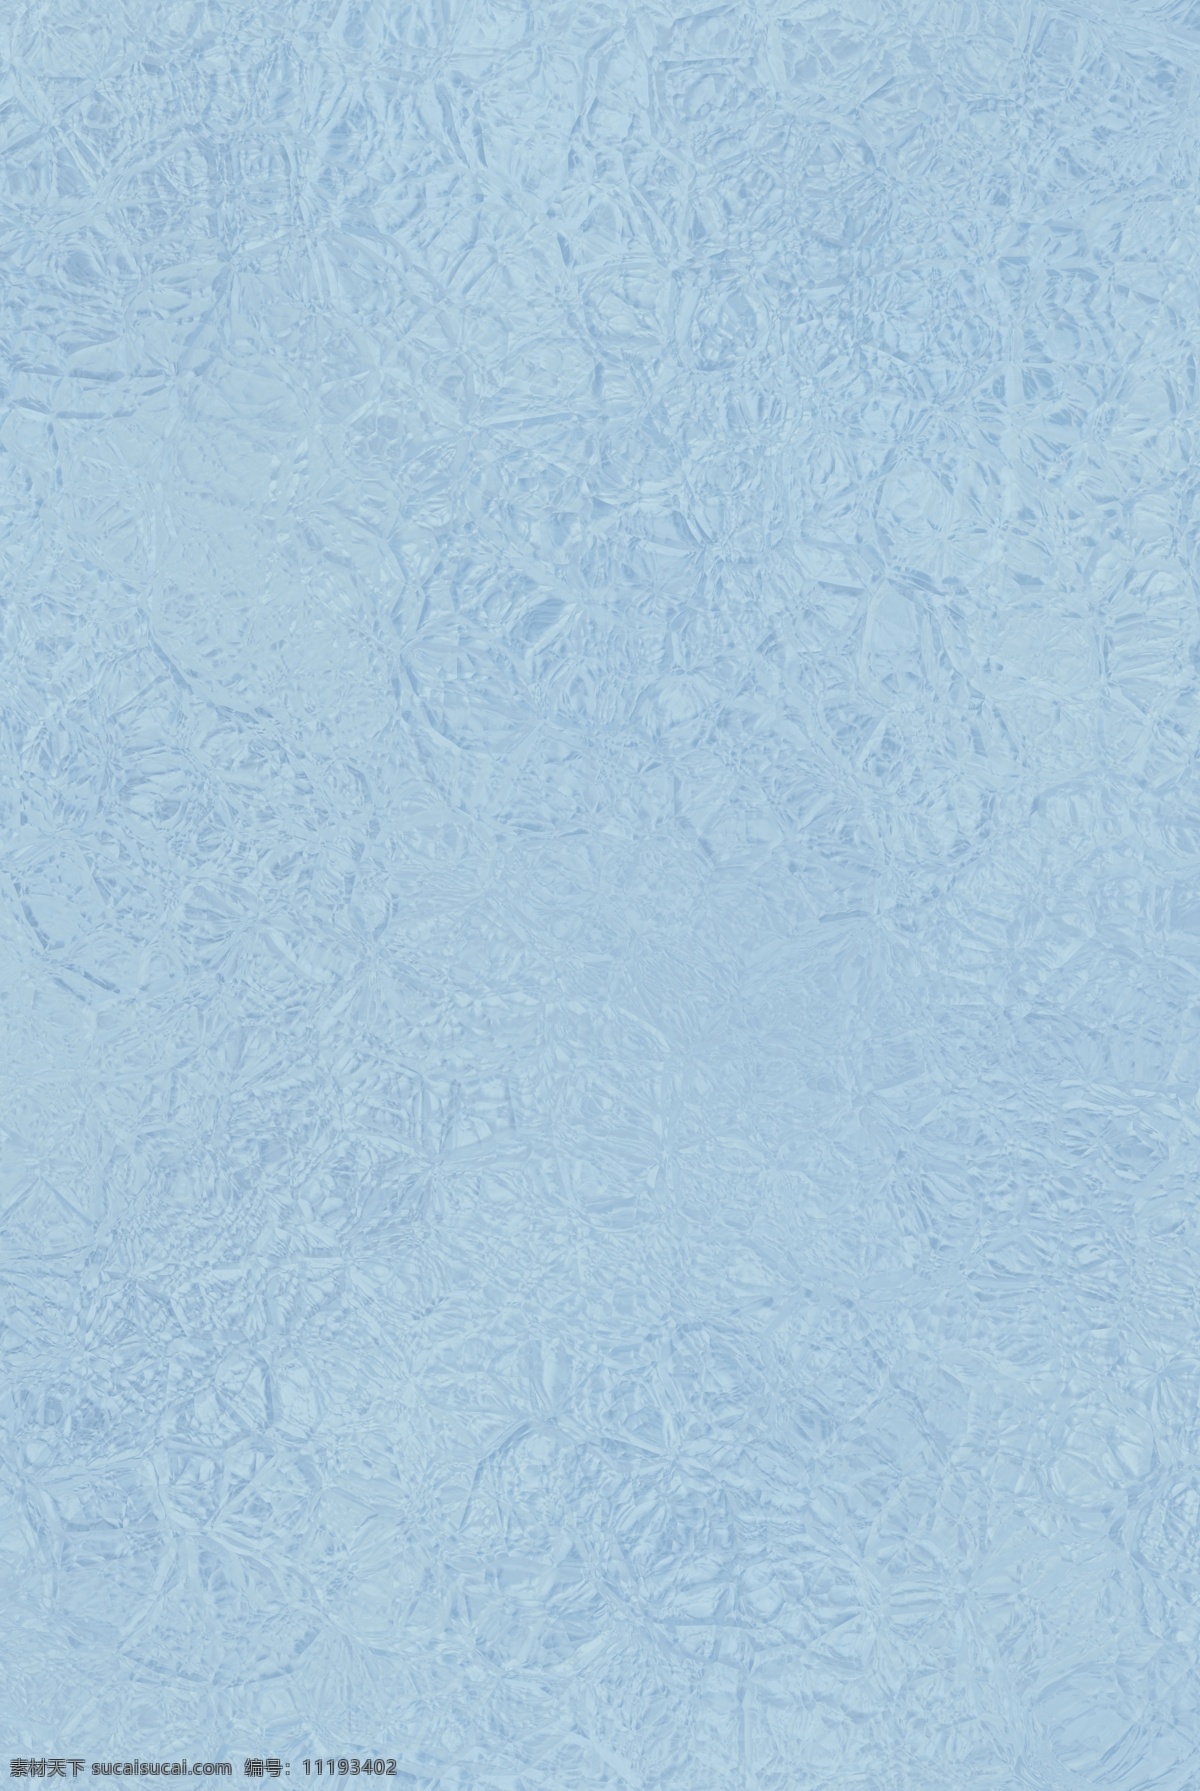 冰面 冰的表面 蓝色 冰柱 冬季 冰景 冰雪 冬天 寒天冻地 冷 寒冷 北方冬天 北方冬季 风景